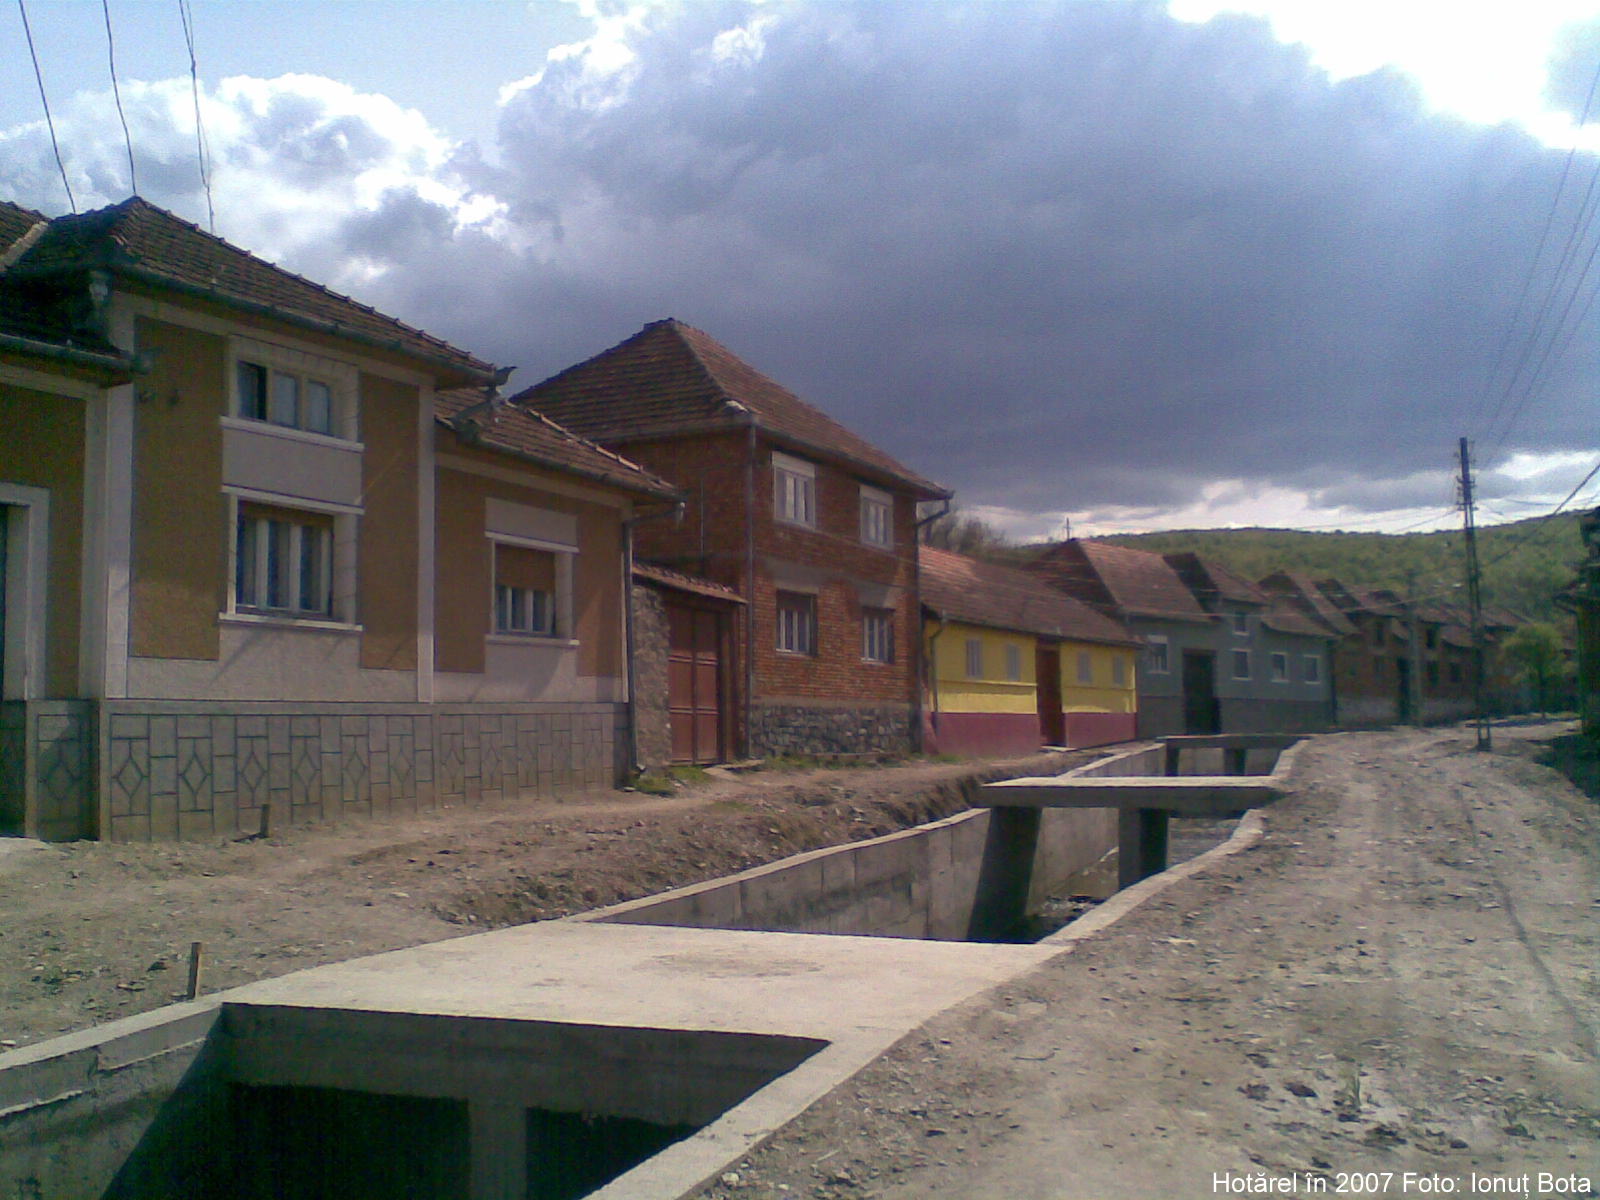 Hotarel, Bihor, Romania in 2007 ; satul Hotarel comuna Lunca judetul Bihor Romania